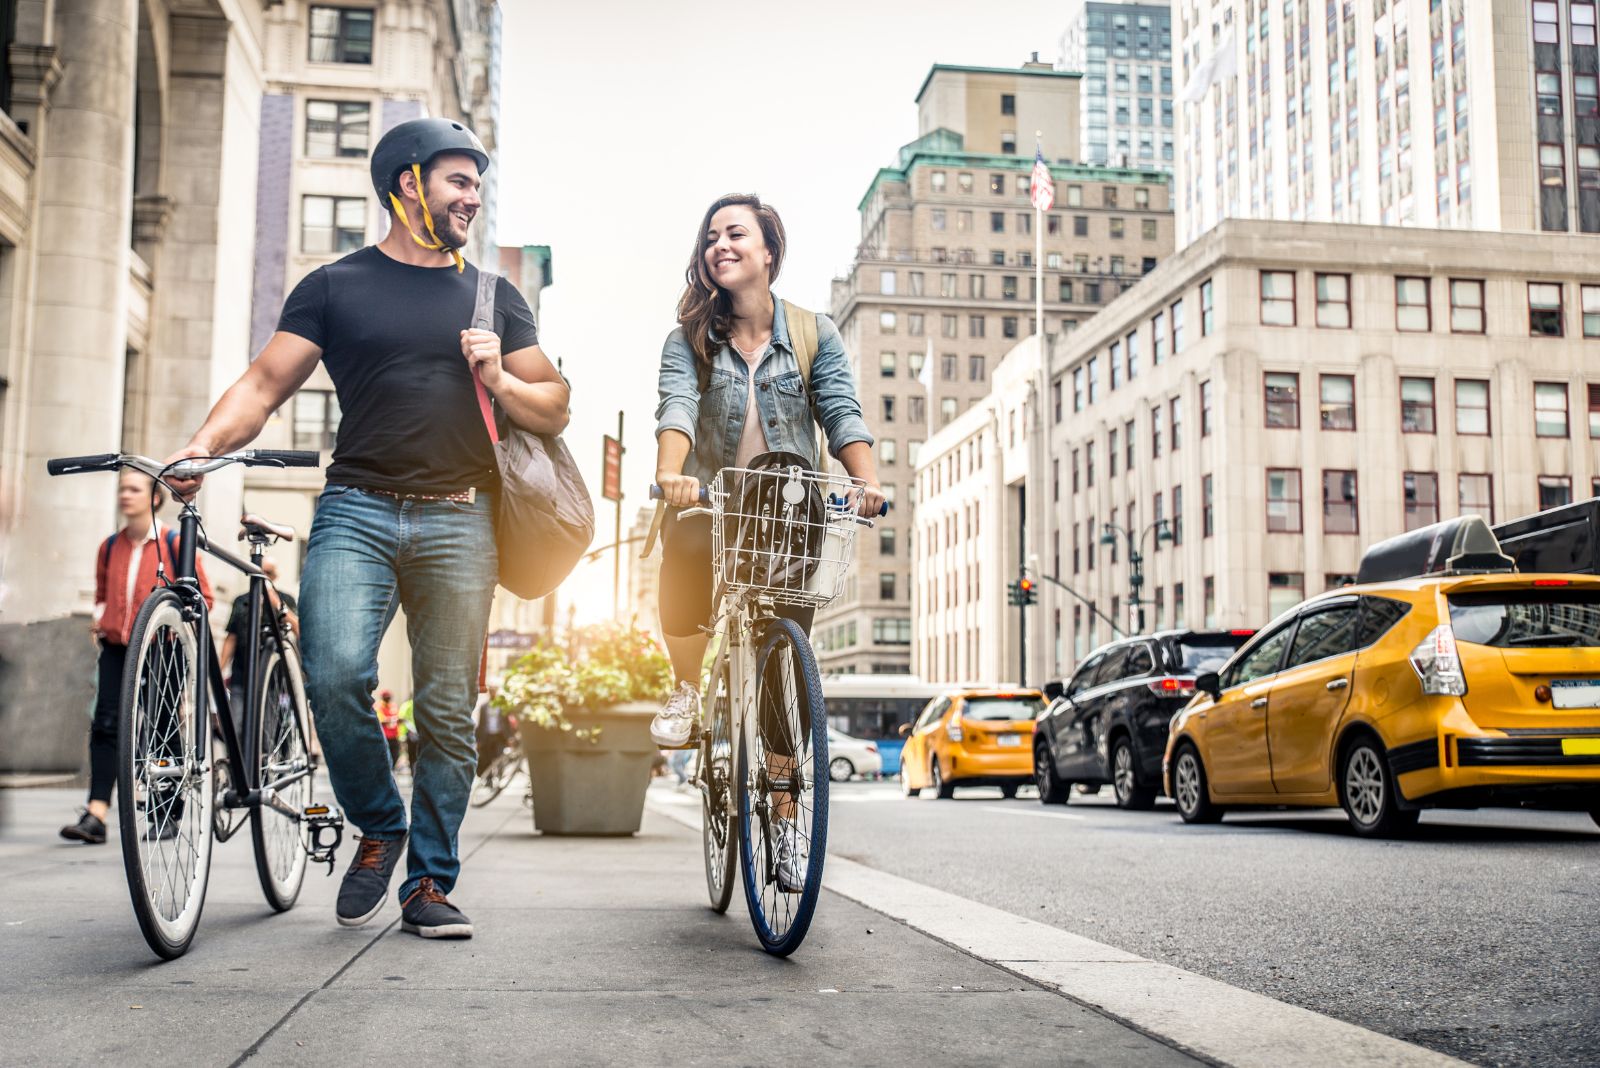 People live in your city. Прогулка на велосипеде в городе. Велосипед в городе. Велосипедист в городе. Люди на велосипедах в городе.